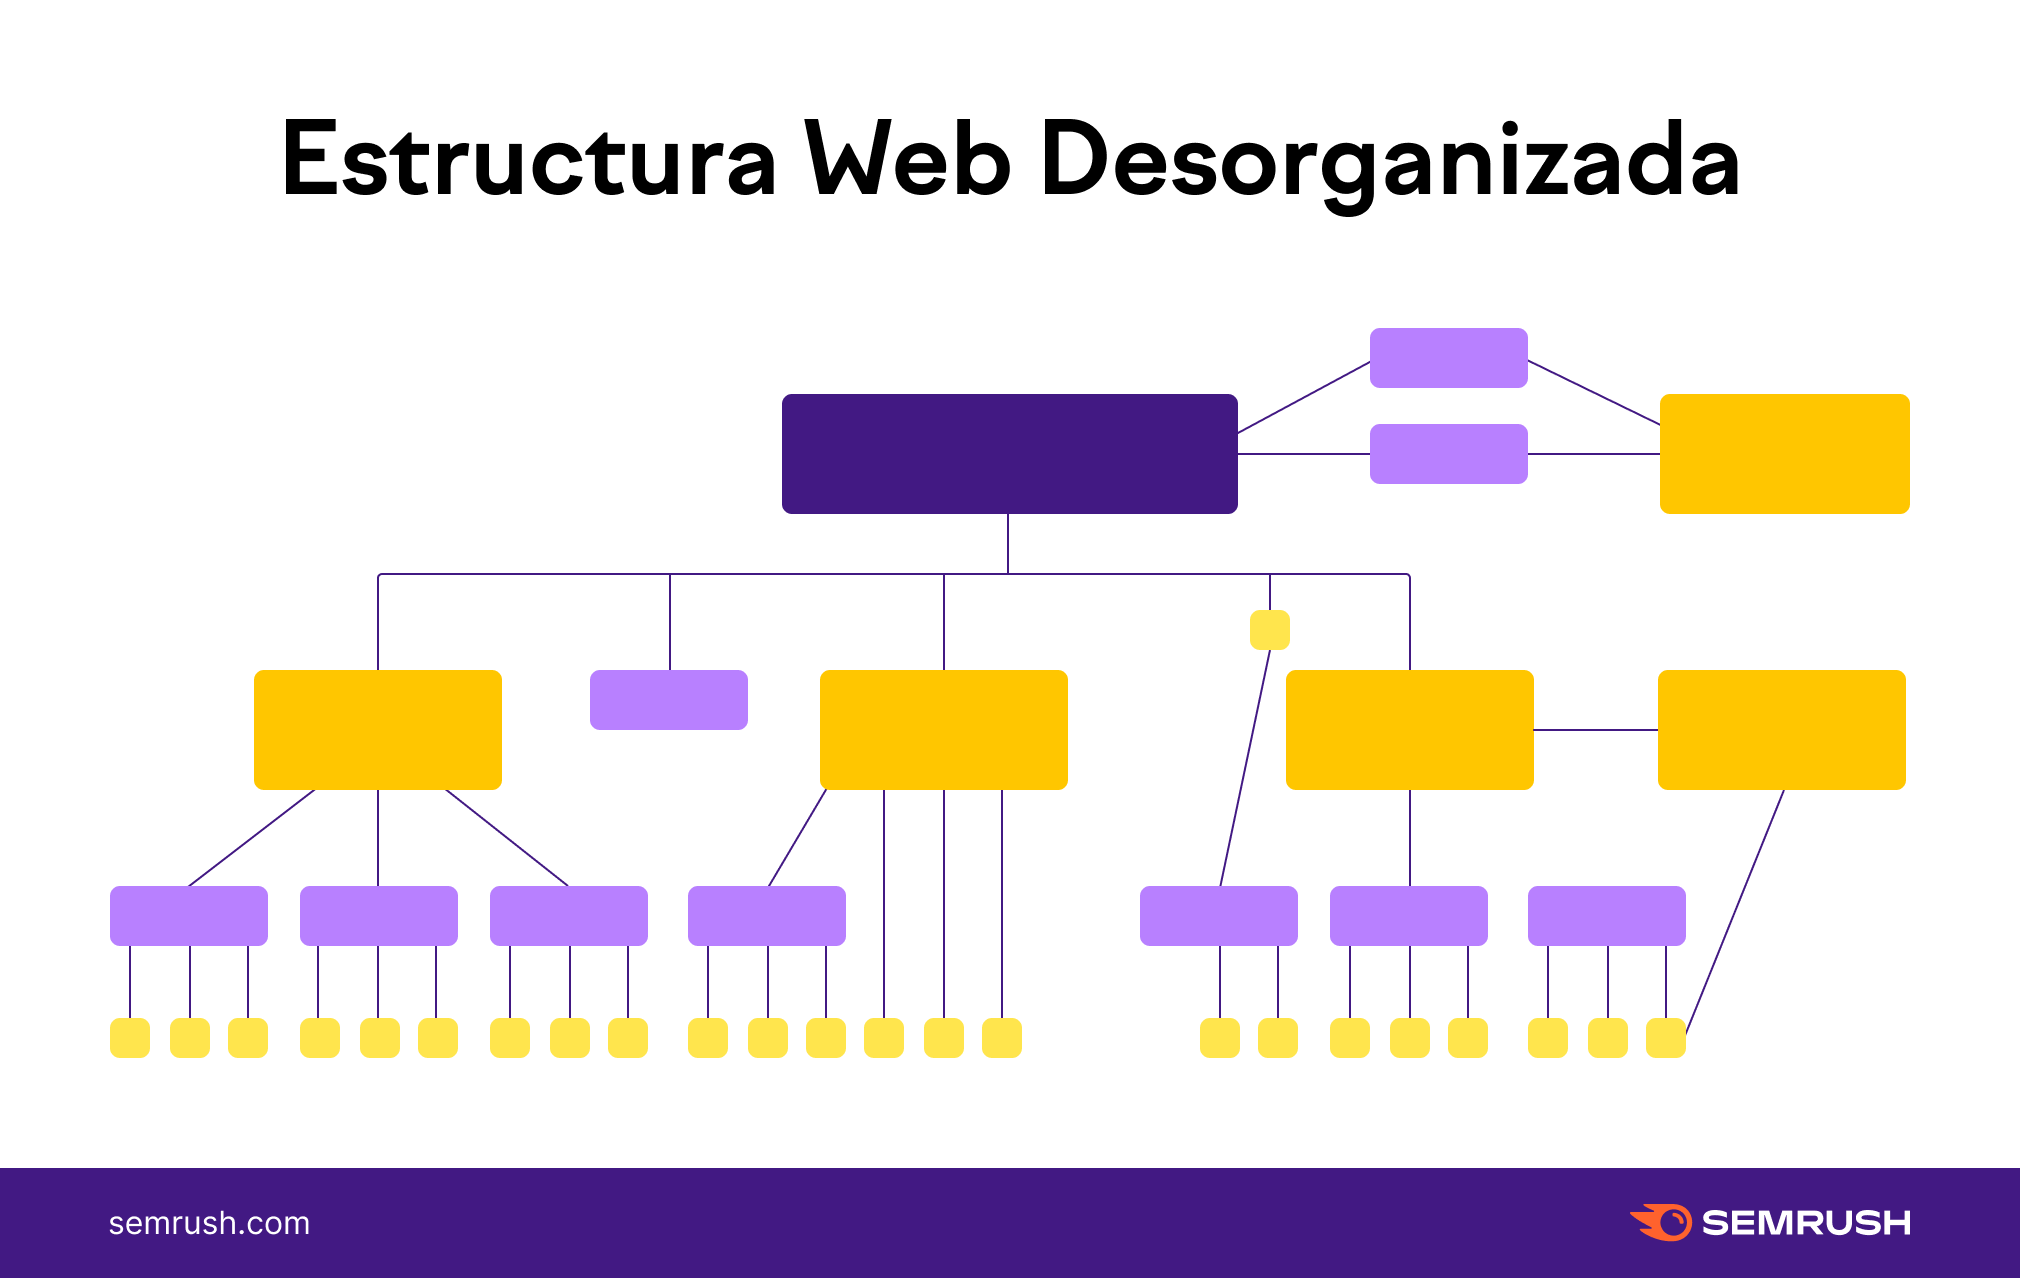 Infografía de Semrush con un ejemplo de una estructura web desorganizada